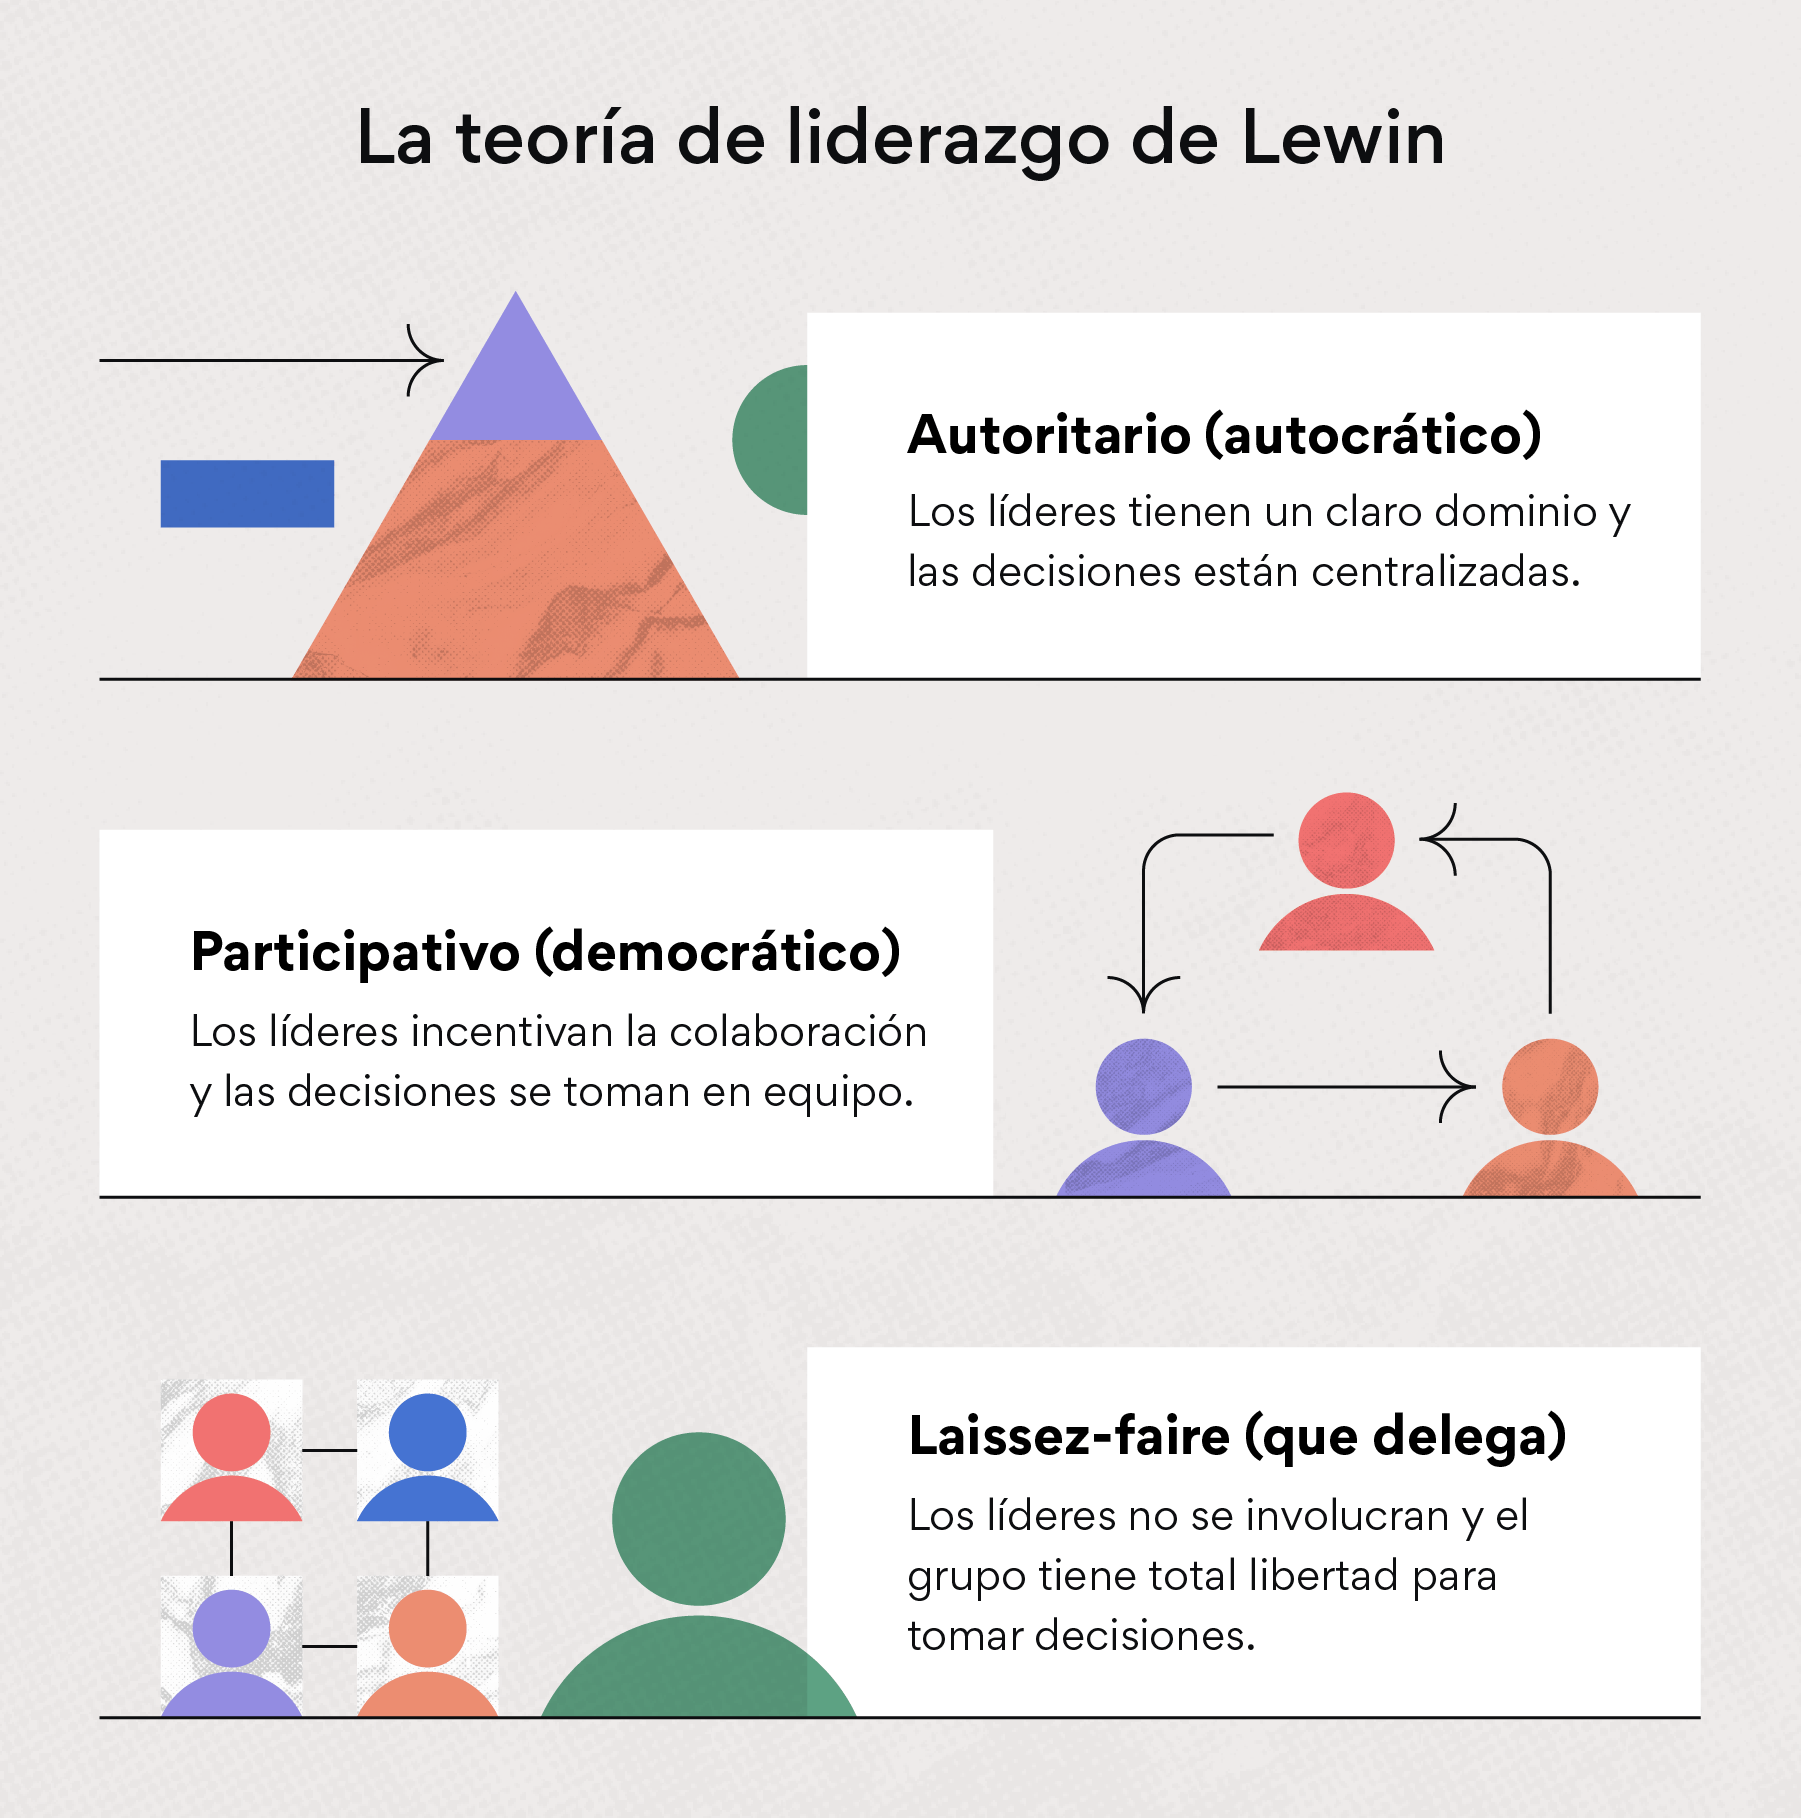 La teoría de liderazgo de Lewin